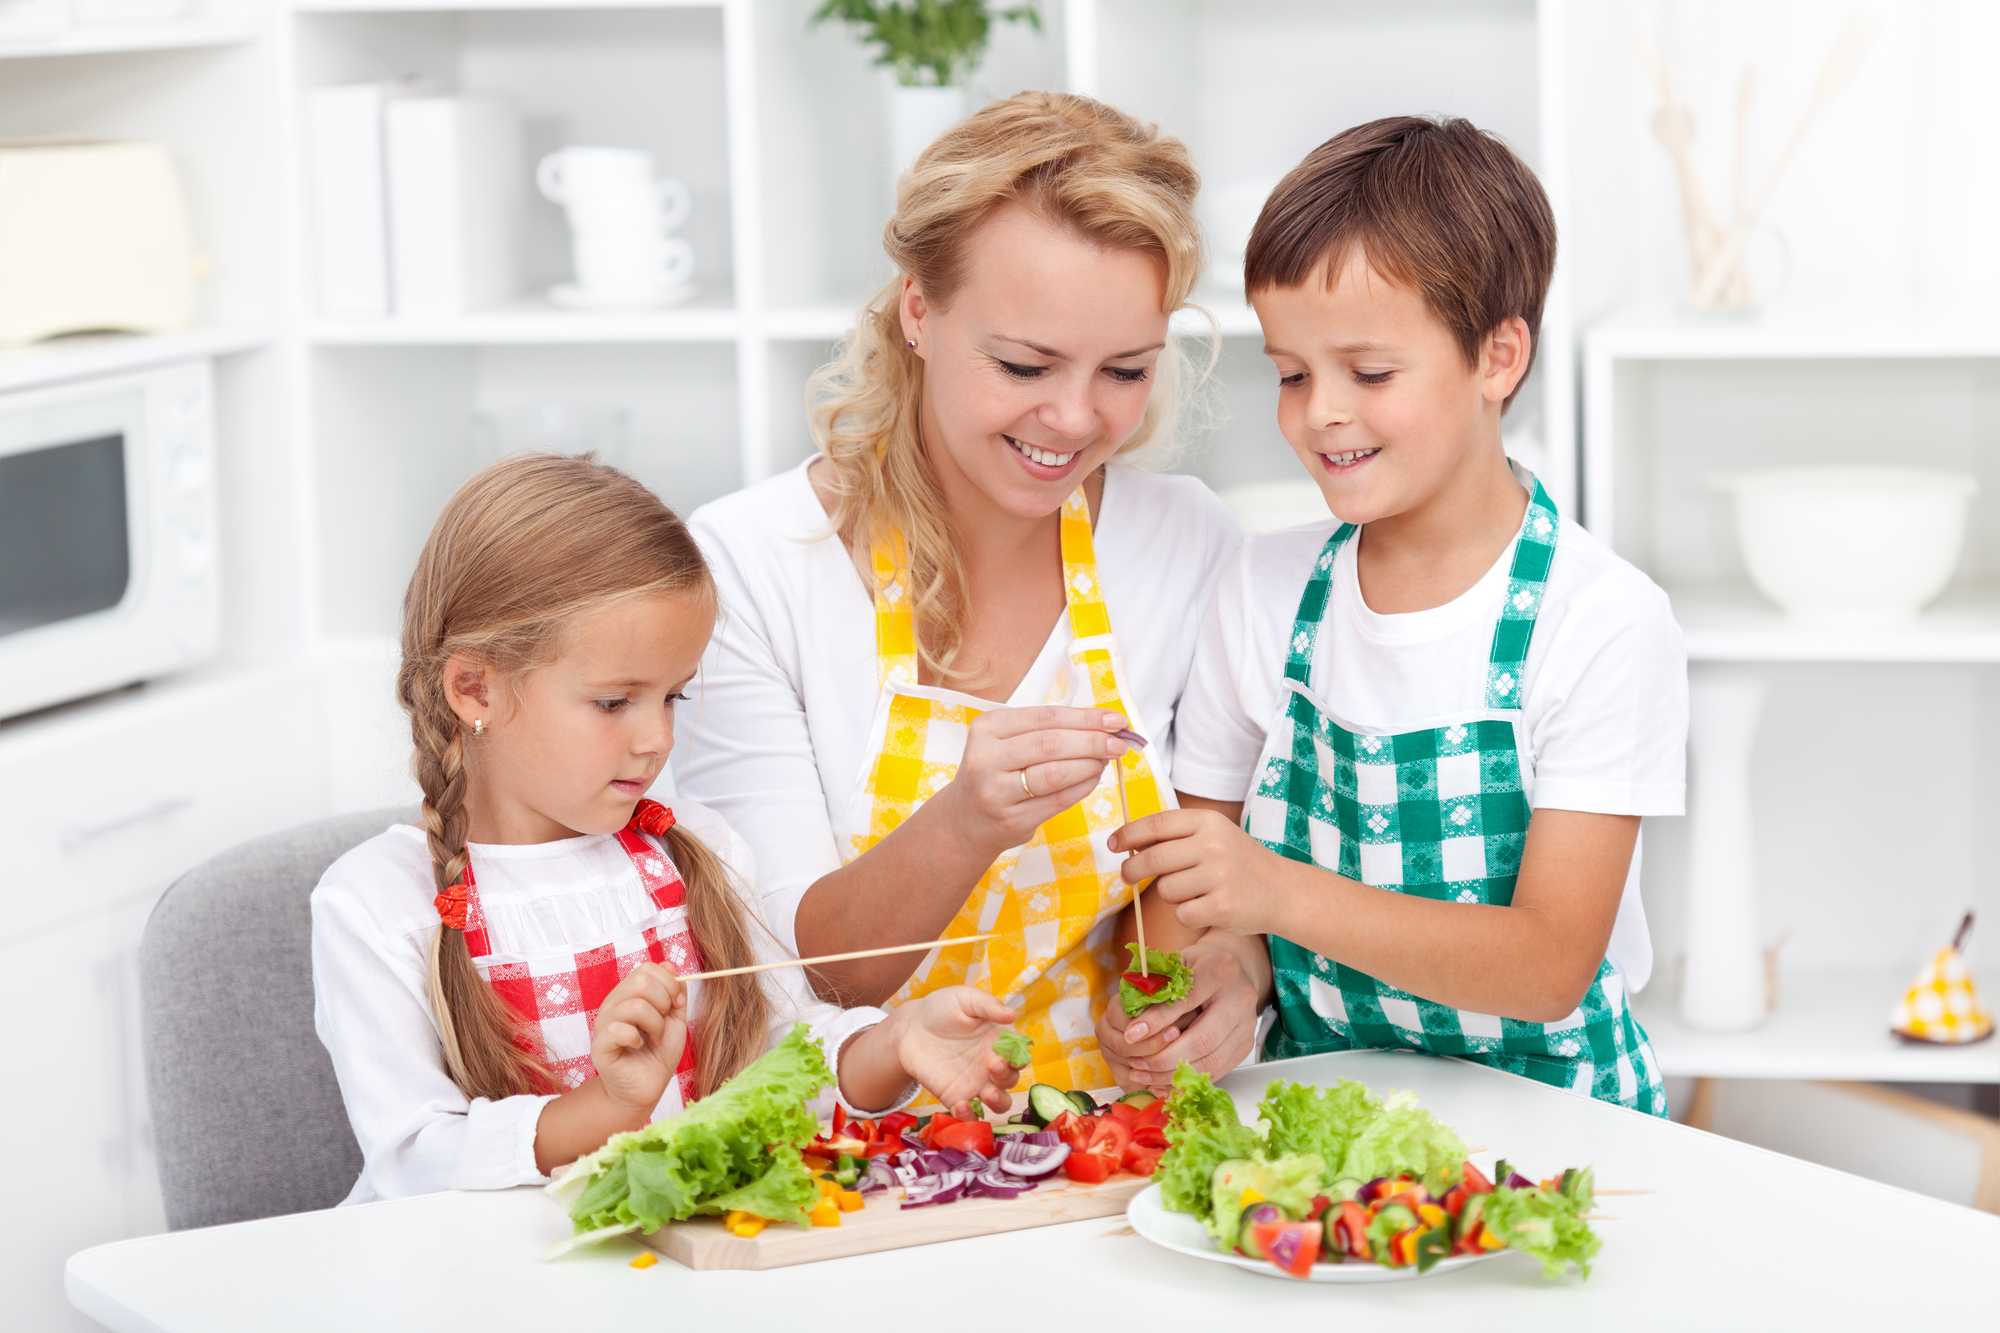 Употребление детьми готовых домашних блюд предоставленных родителями. Здоровое питание для детей. Обед для детей. Здоровое питание в семье. Семья на кухне.